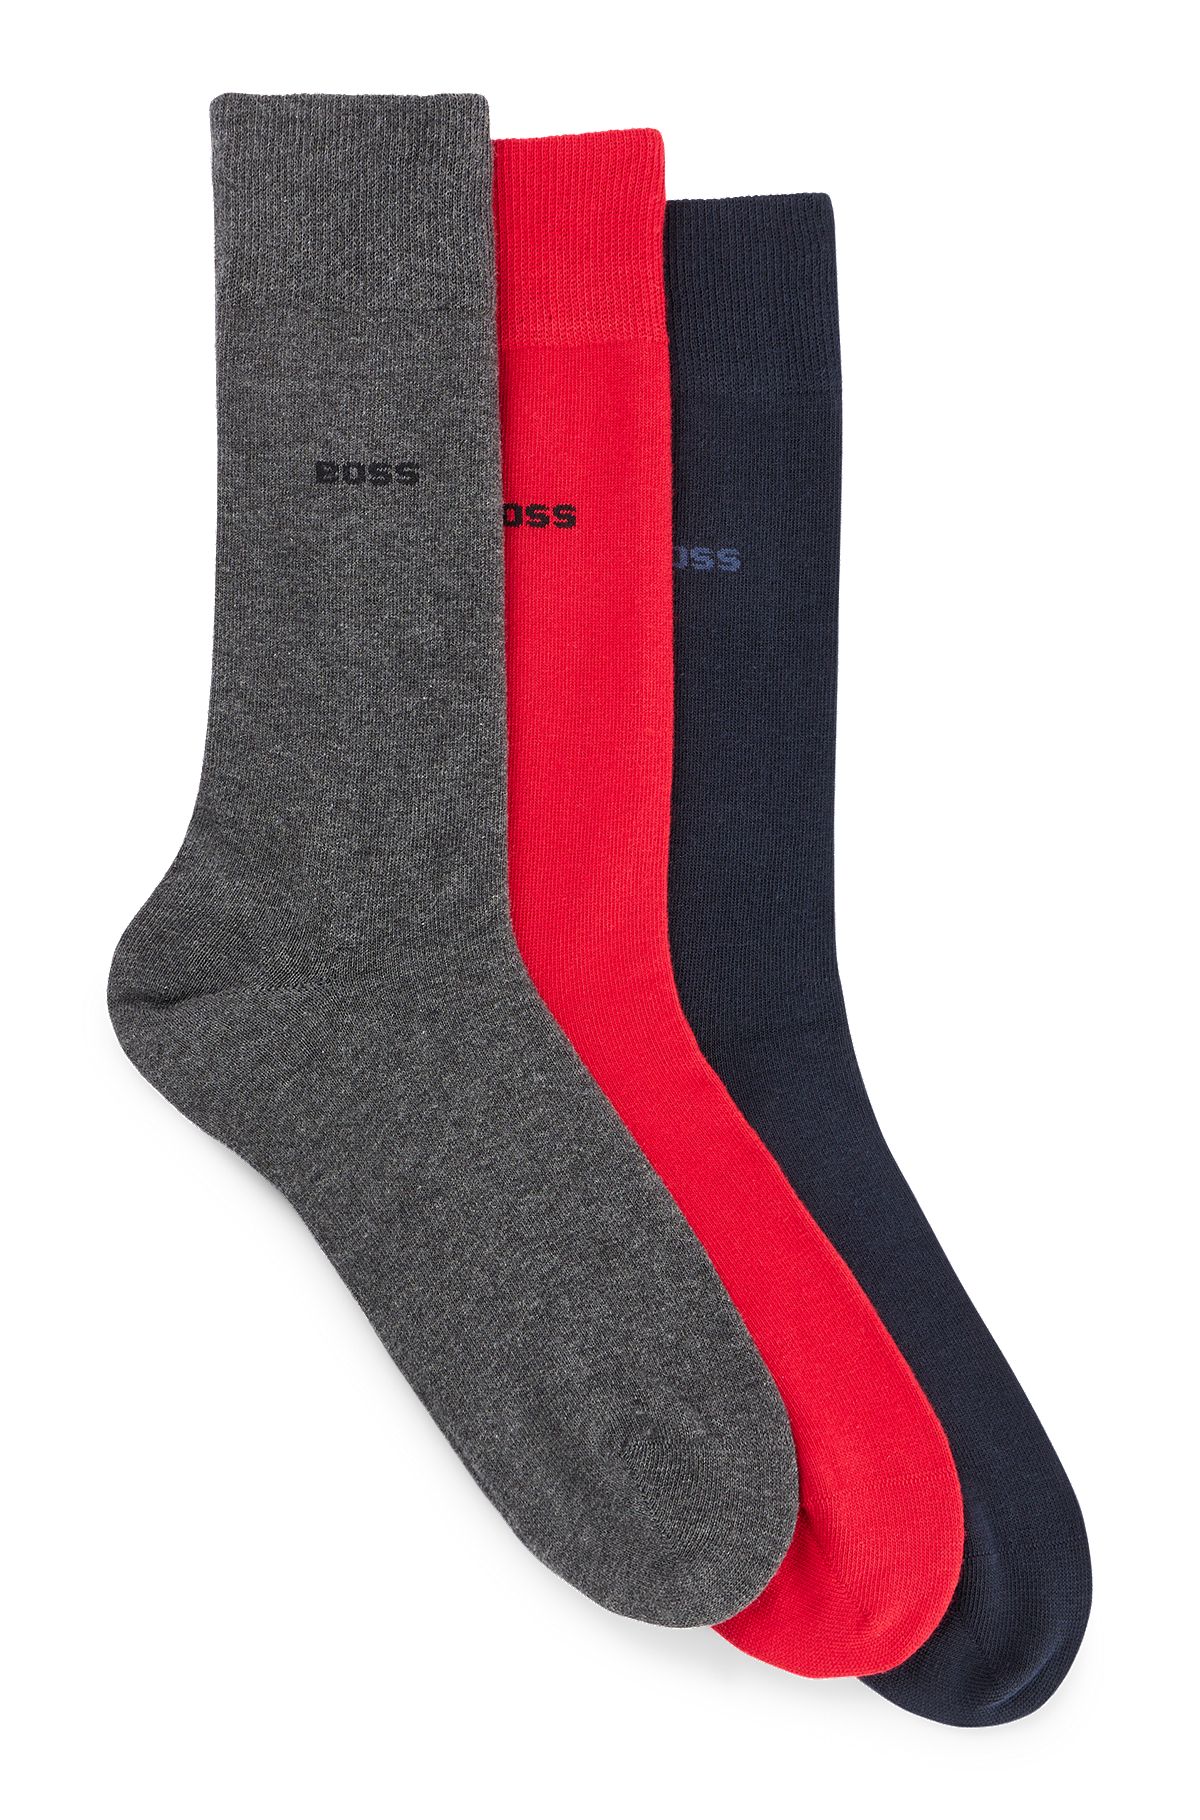 Mittelhohe Socken im Dreier-Pack - Geschenk-Set, Grau / Rot /